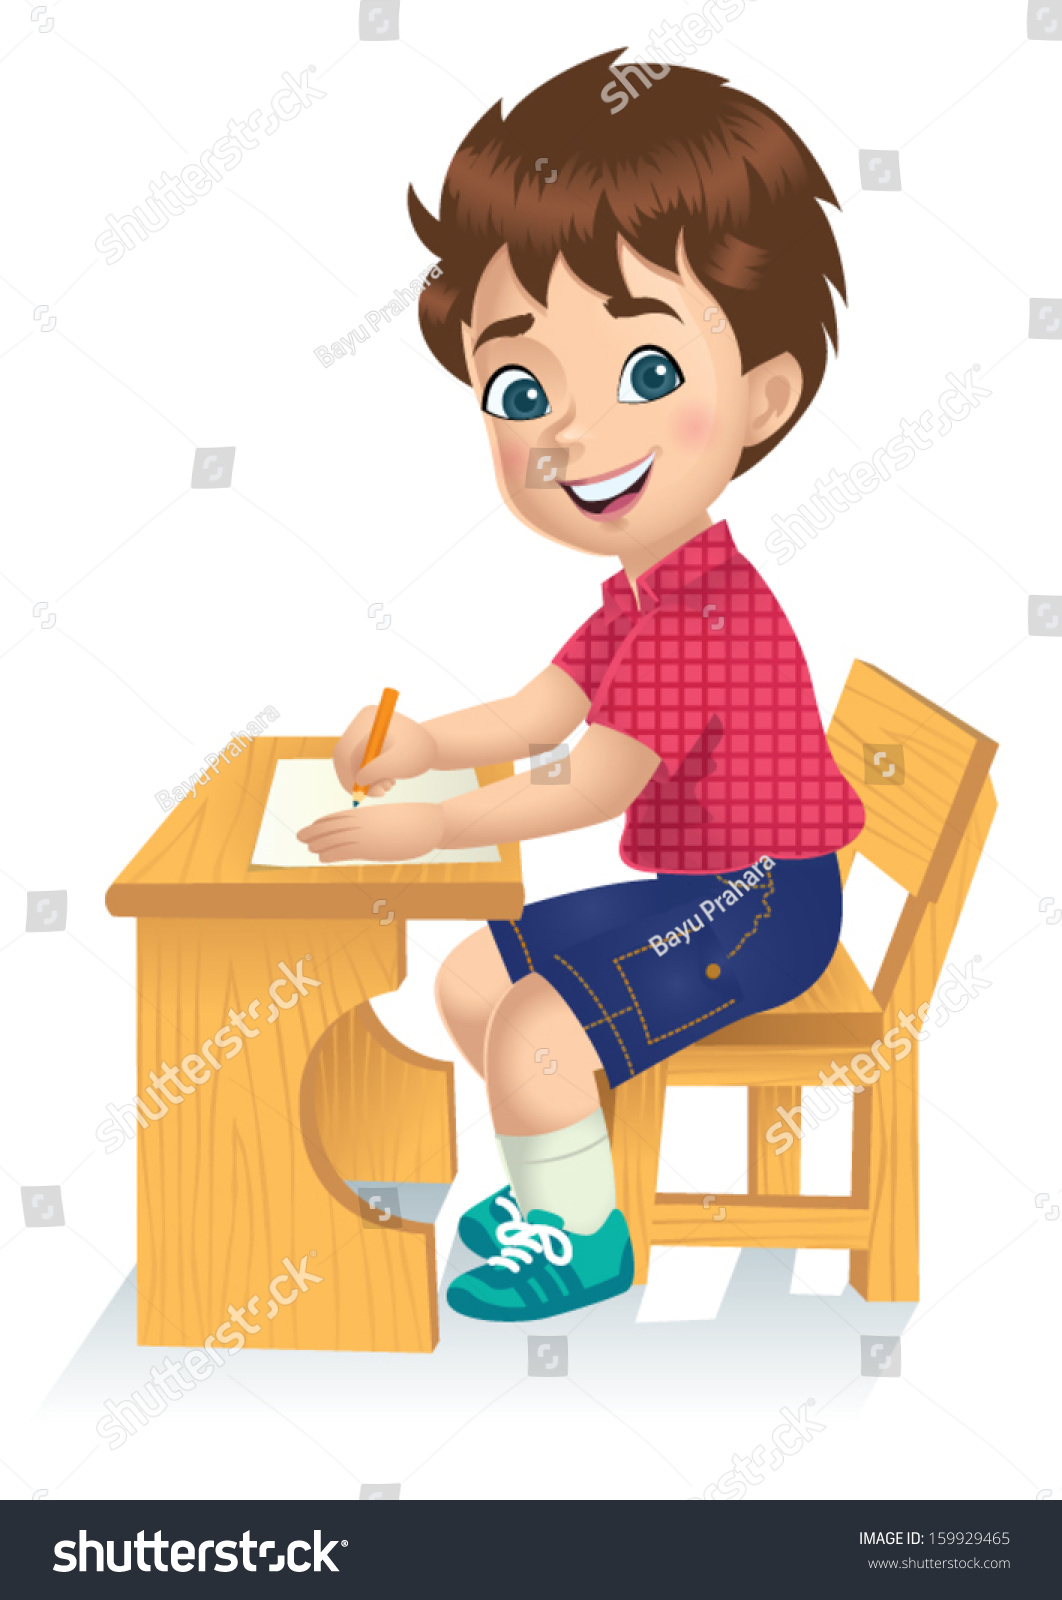 Boy writing animated